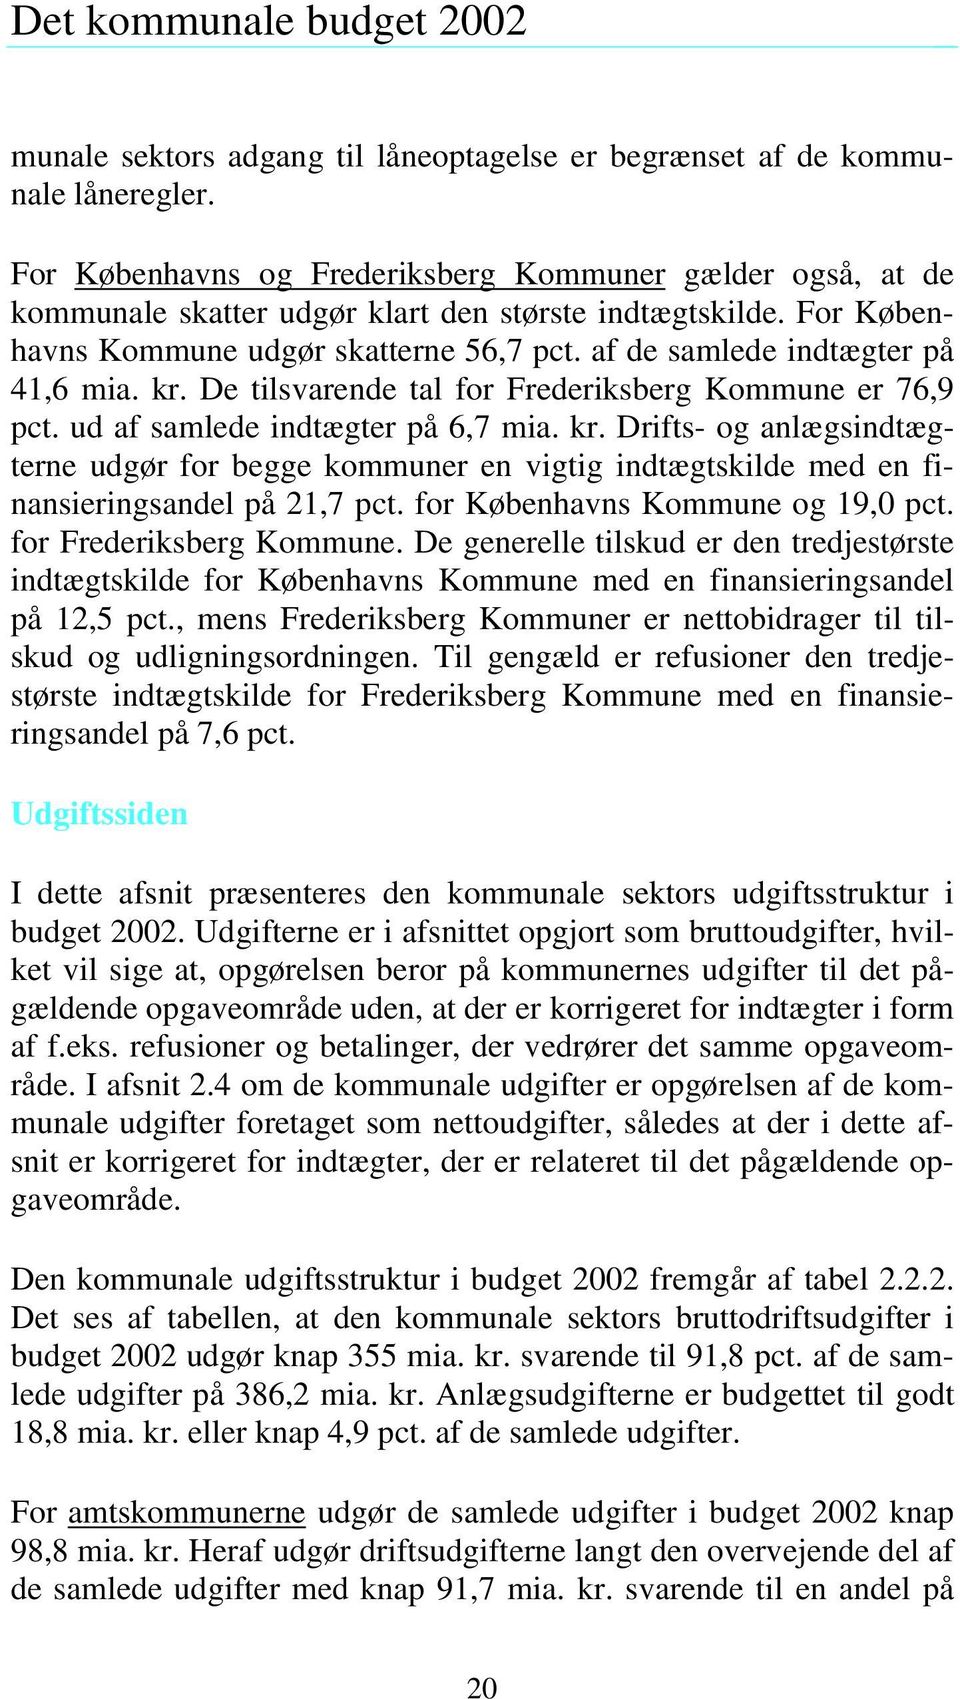 af de samlede indtægter på 41,6 mia. kr. De tilsvarende tal for Frederiksberg Kommune er 76,9 pct. ud af samlede indtægter på 6,7 mia. kr. Drifts- og anlægsindtægterne udgør for begge kommuner en vigtig indtægtskilde med en finansieringsandel på 21,7 pct.